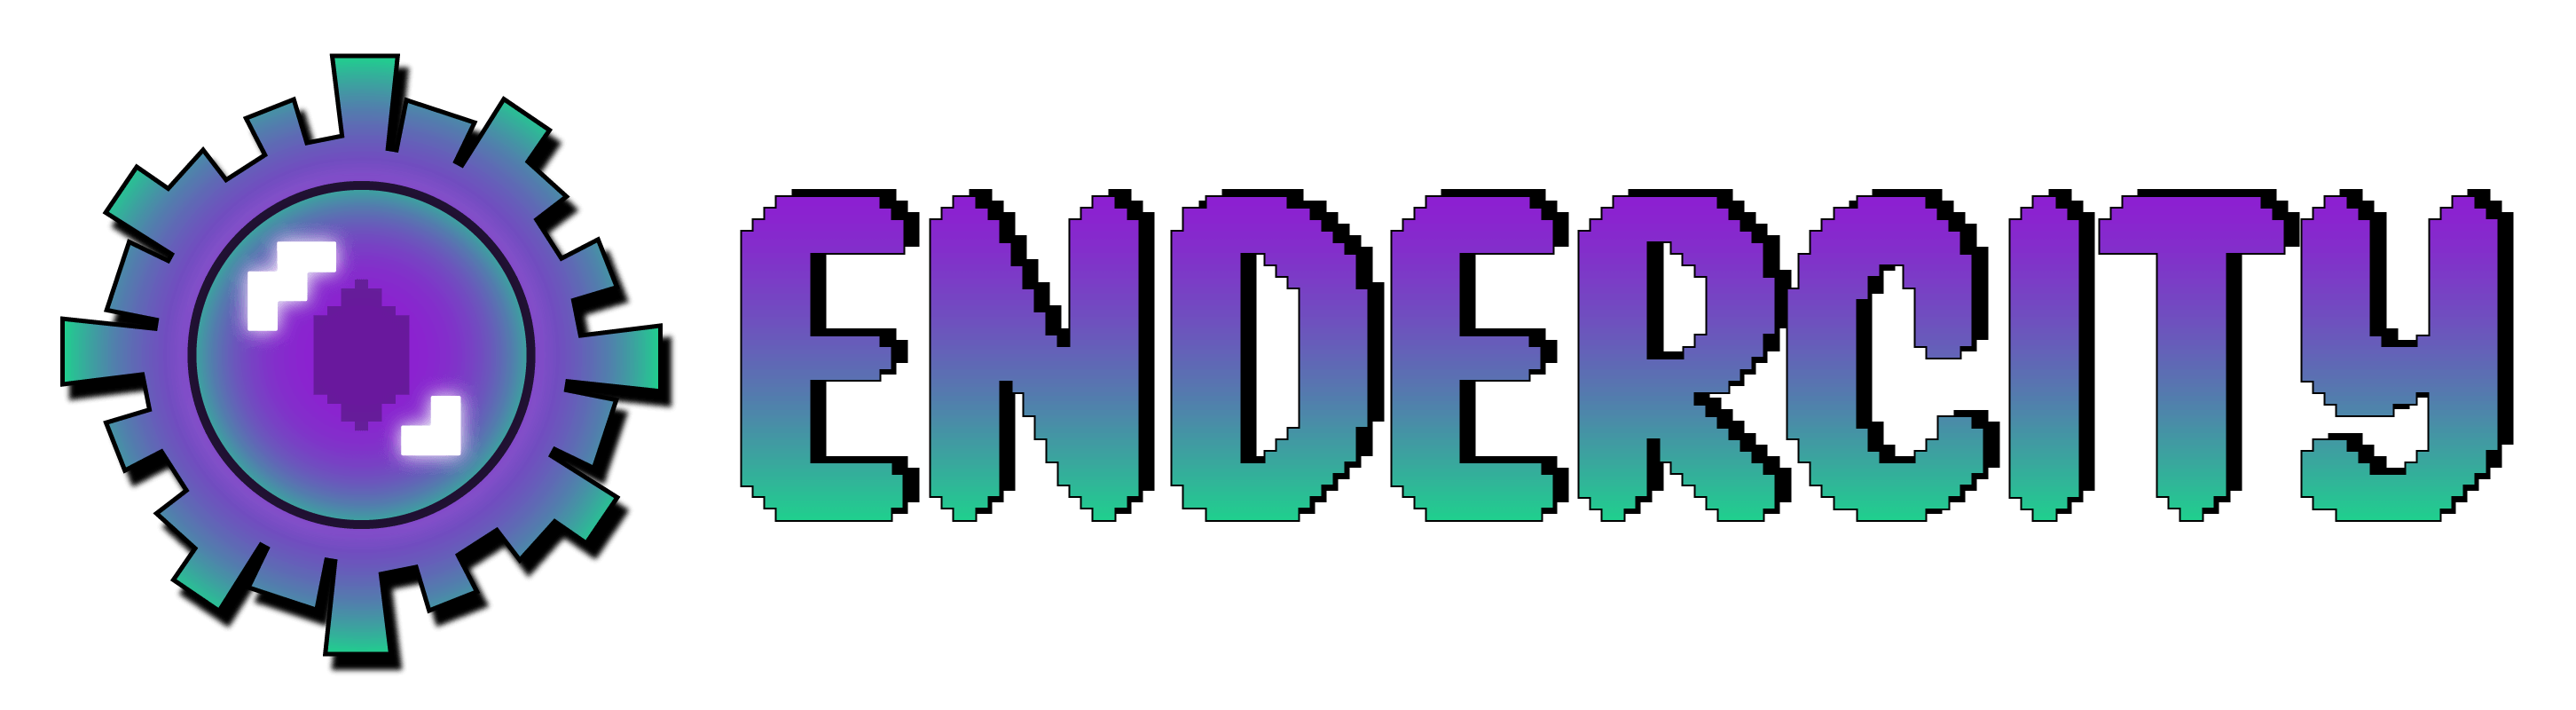 Endercity Logo